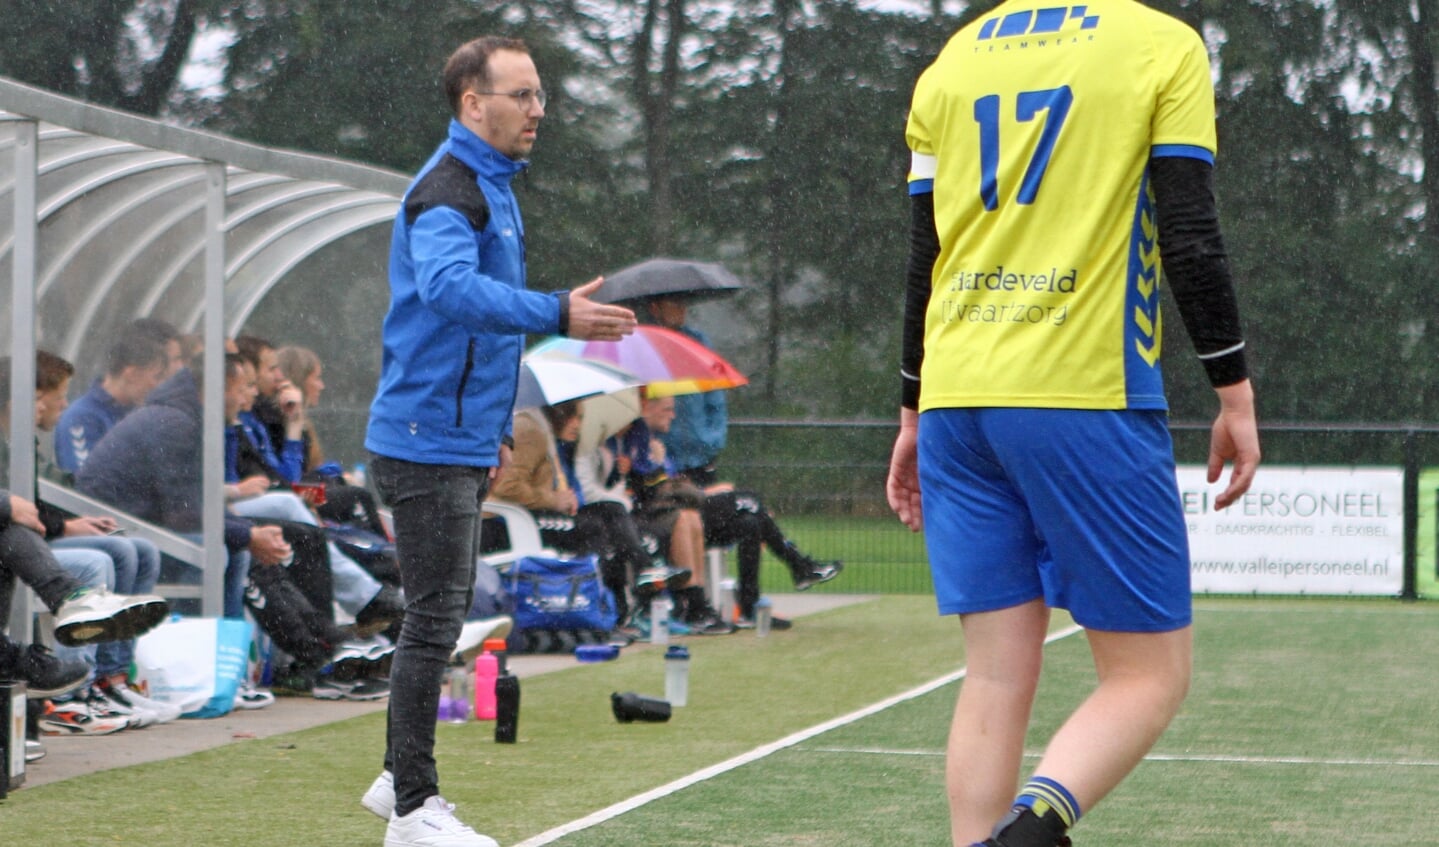 Coach van Steenbergen